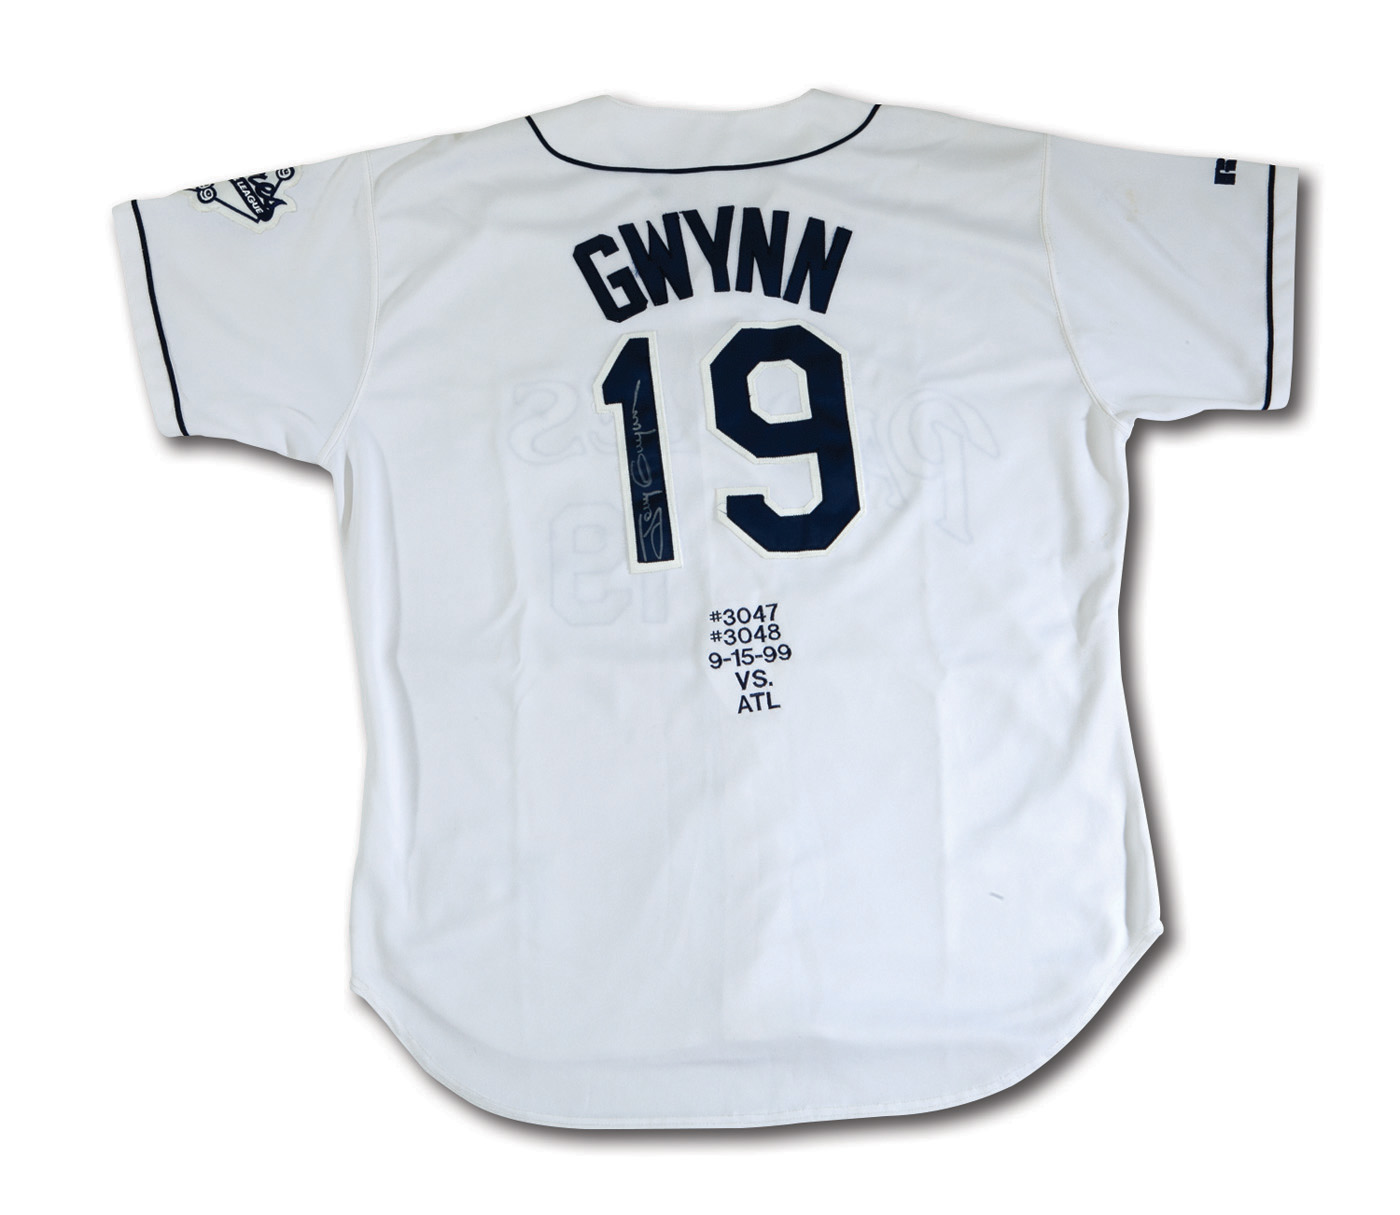 Circa 2000 Tony Gwynn Game Worn San Diego Padres Jersey.